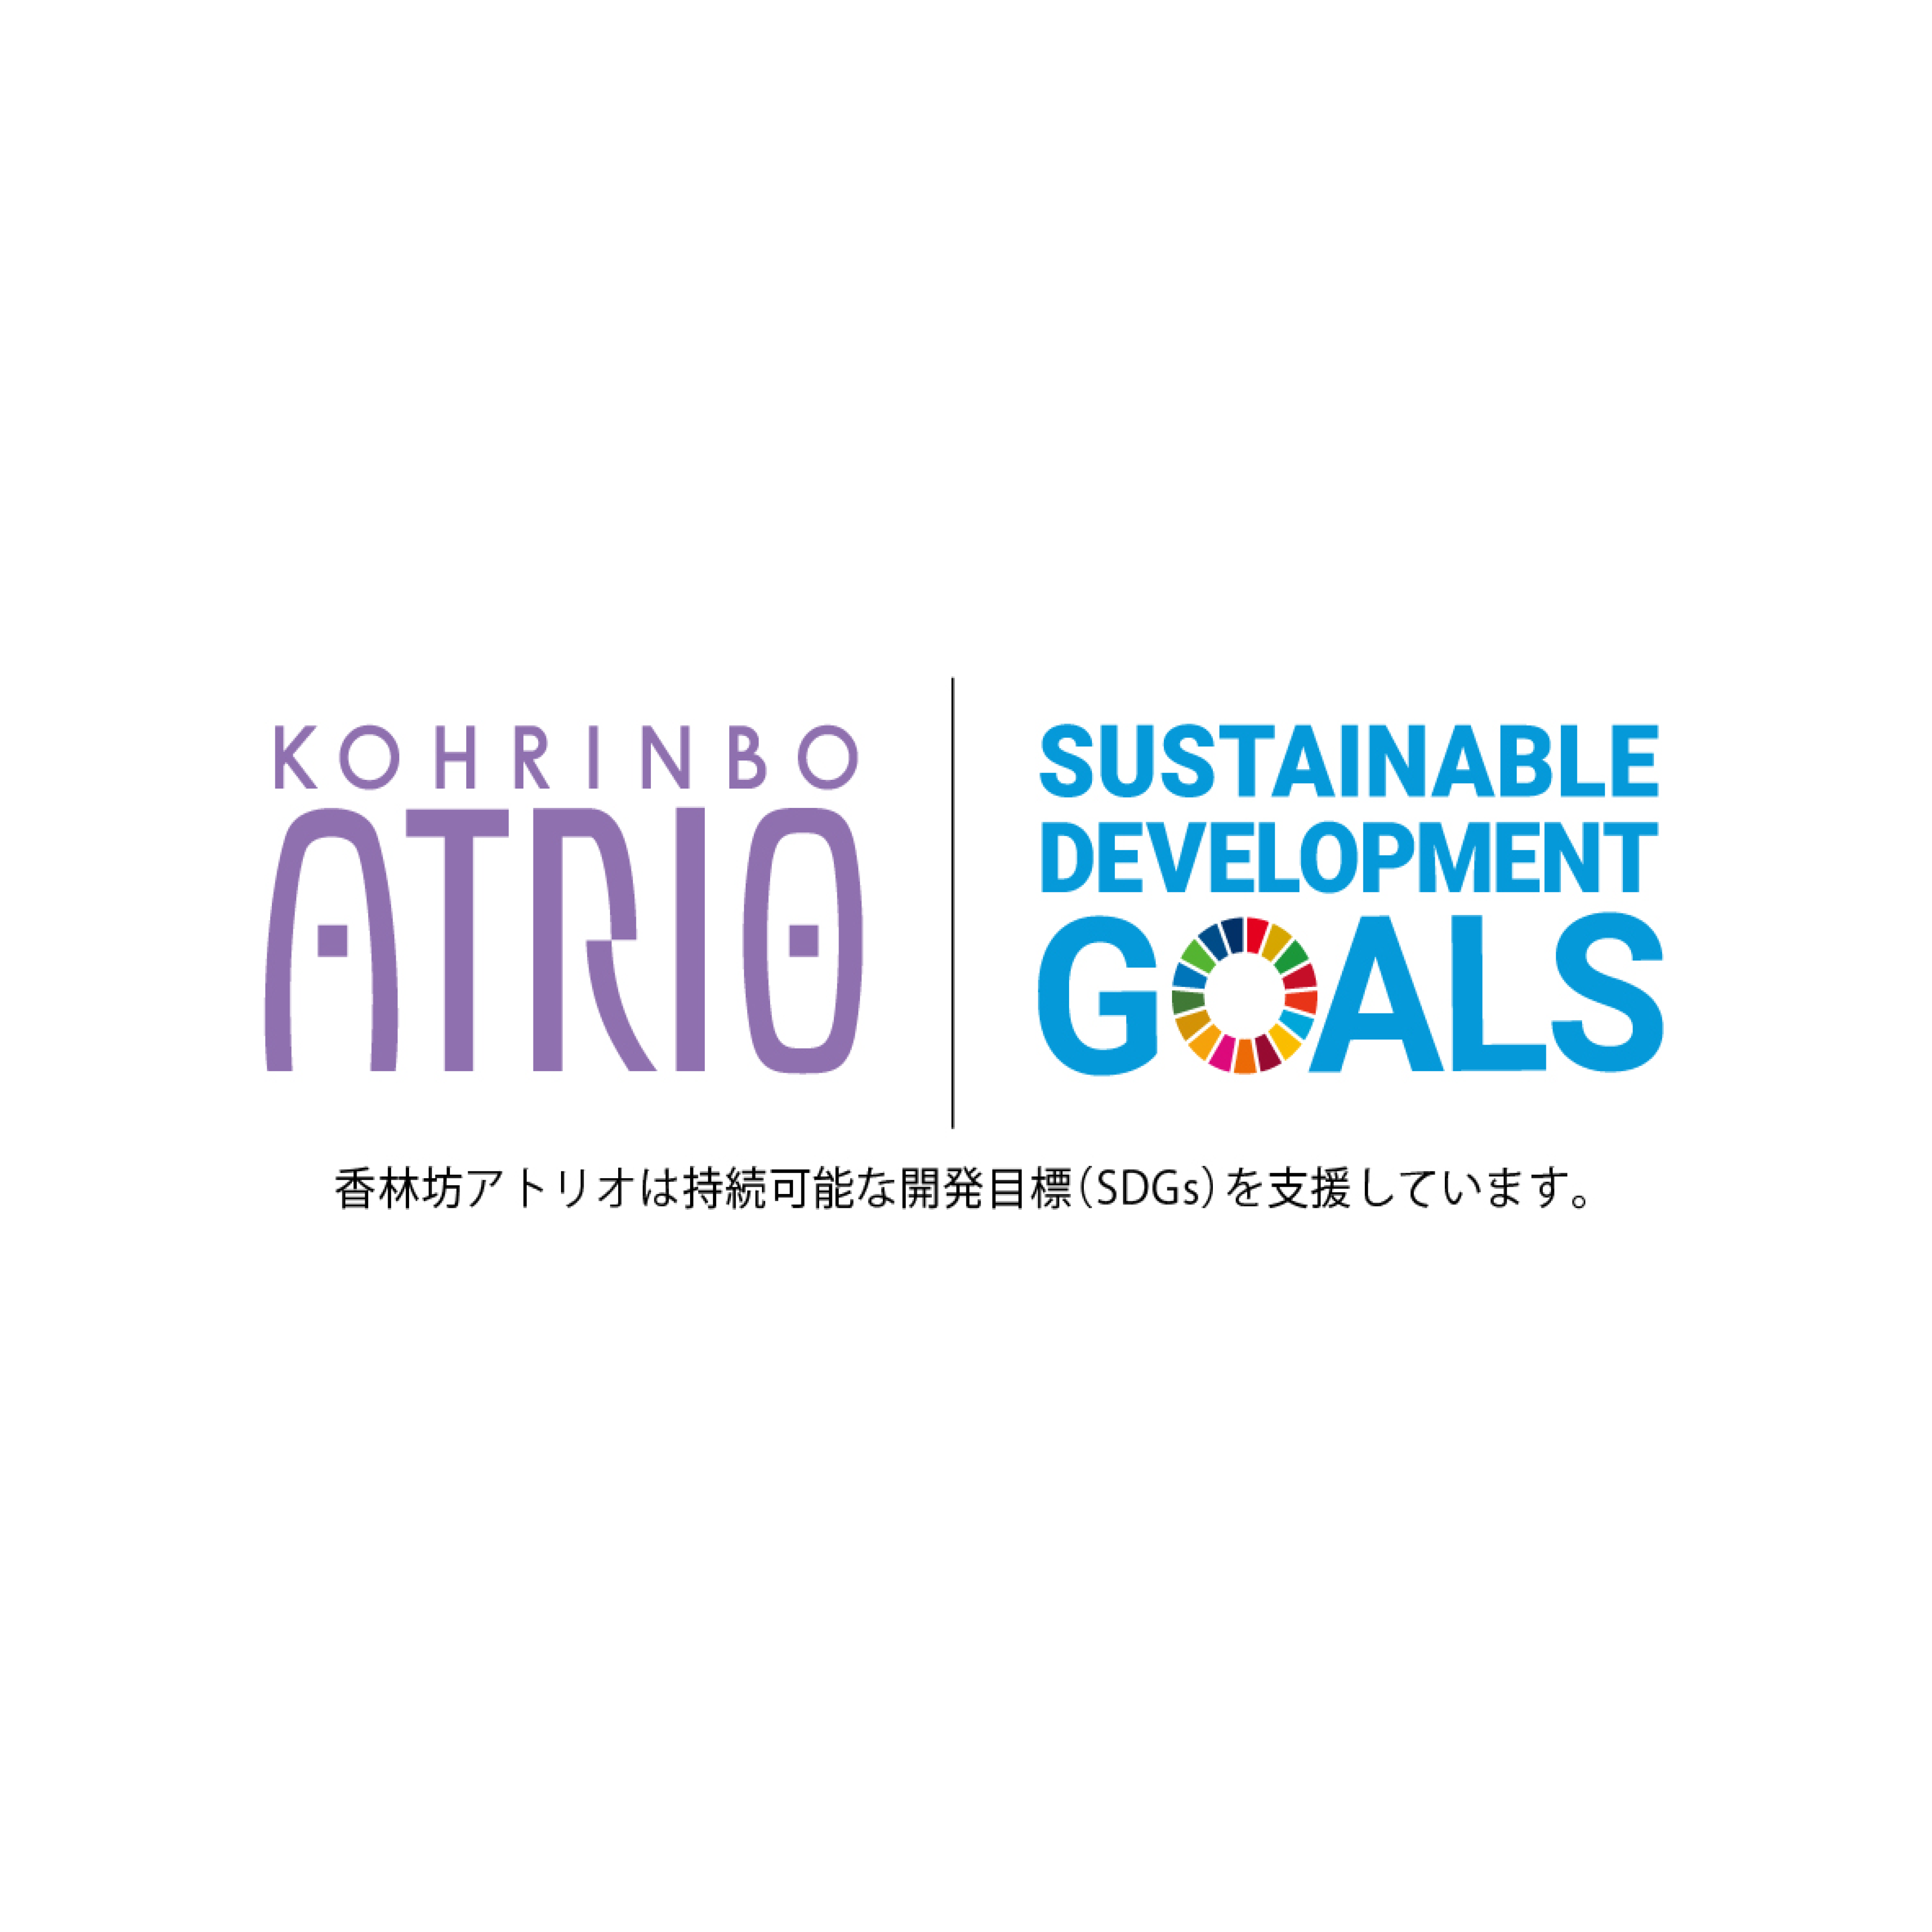 【アトリオとSDGs】SDGs ACTION